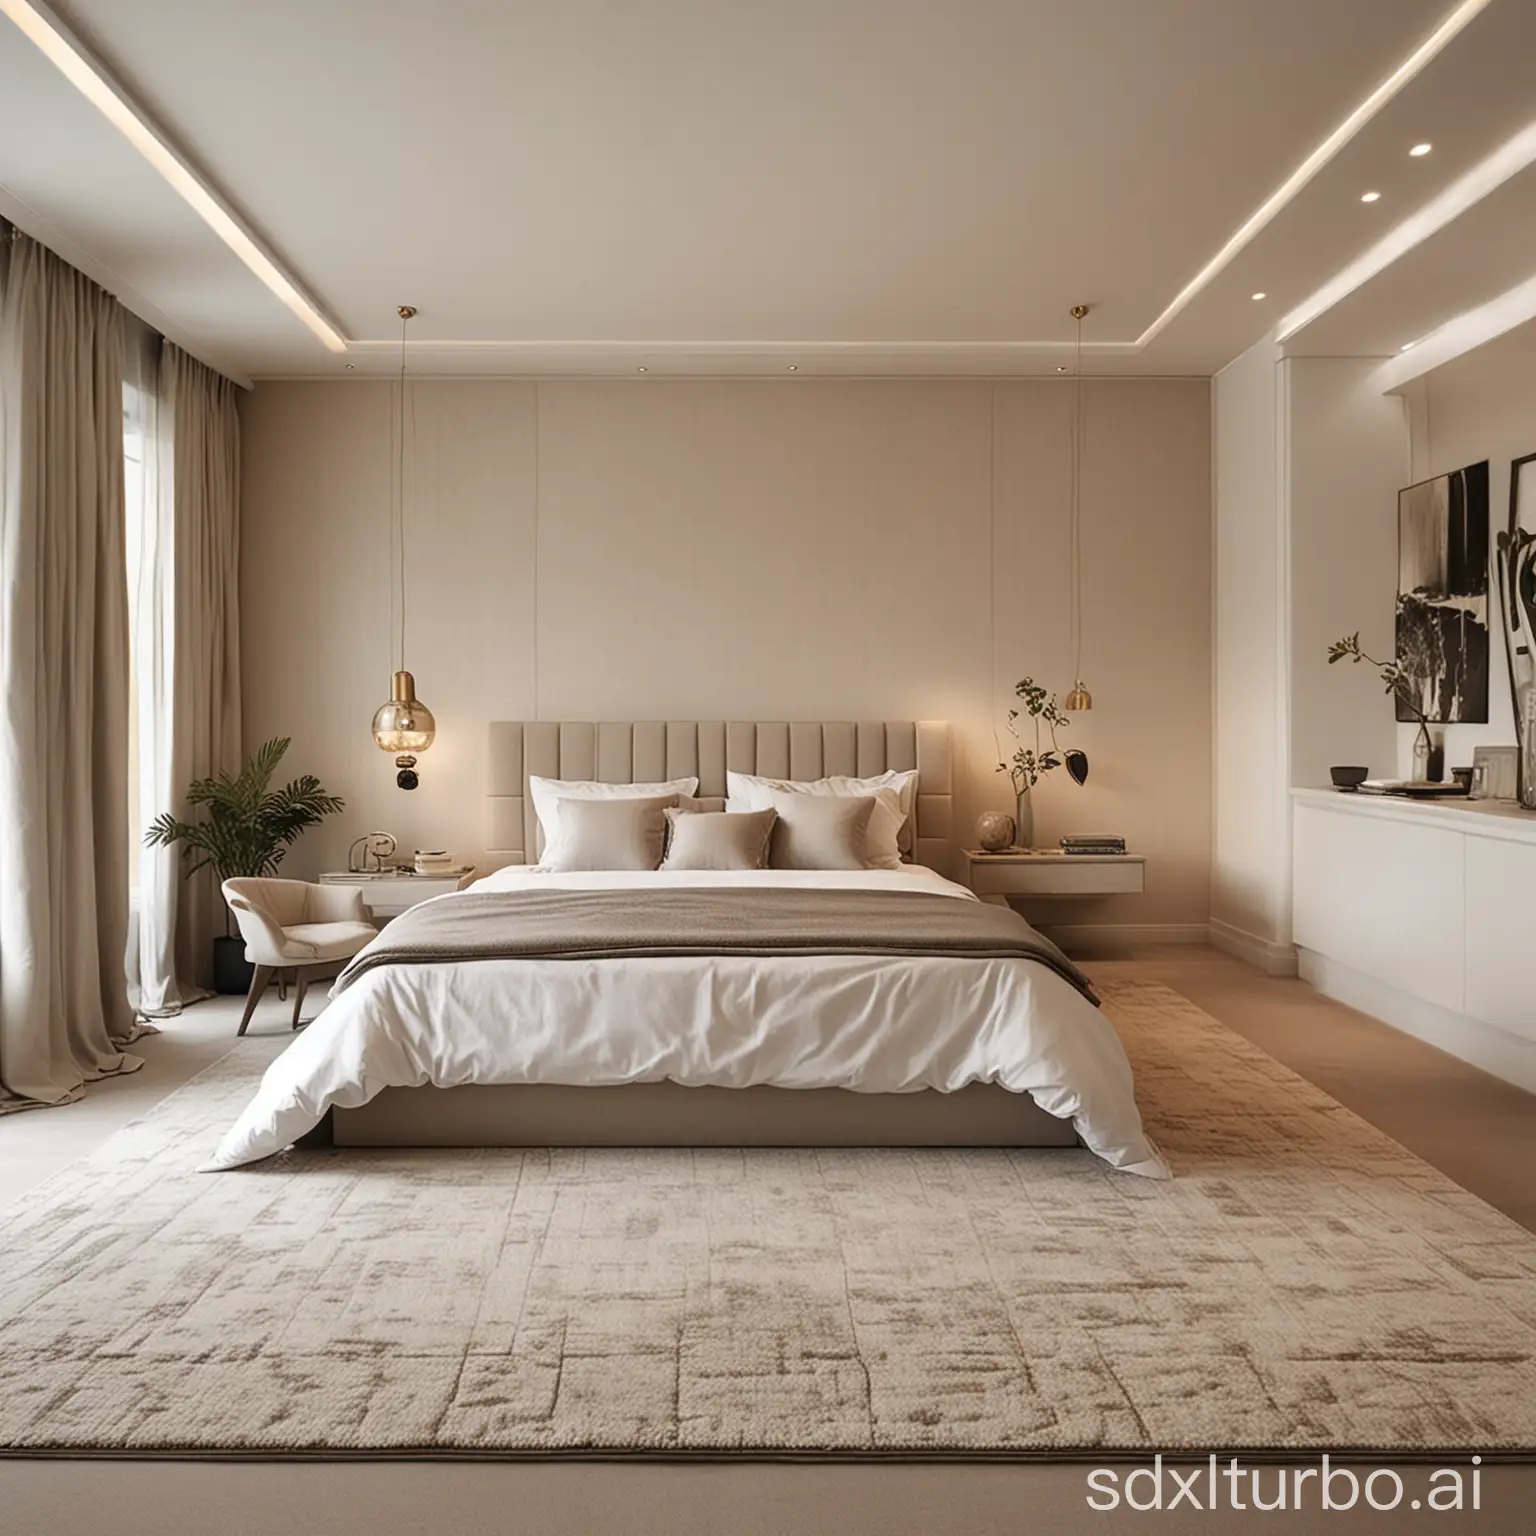 现代温馨的卧室 中间一个大地毯